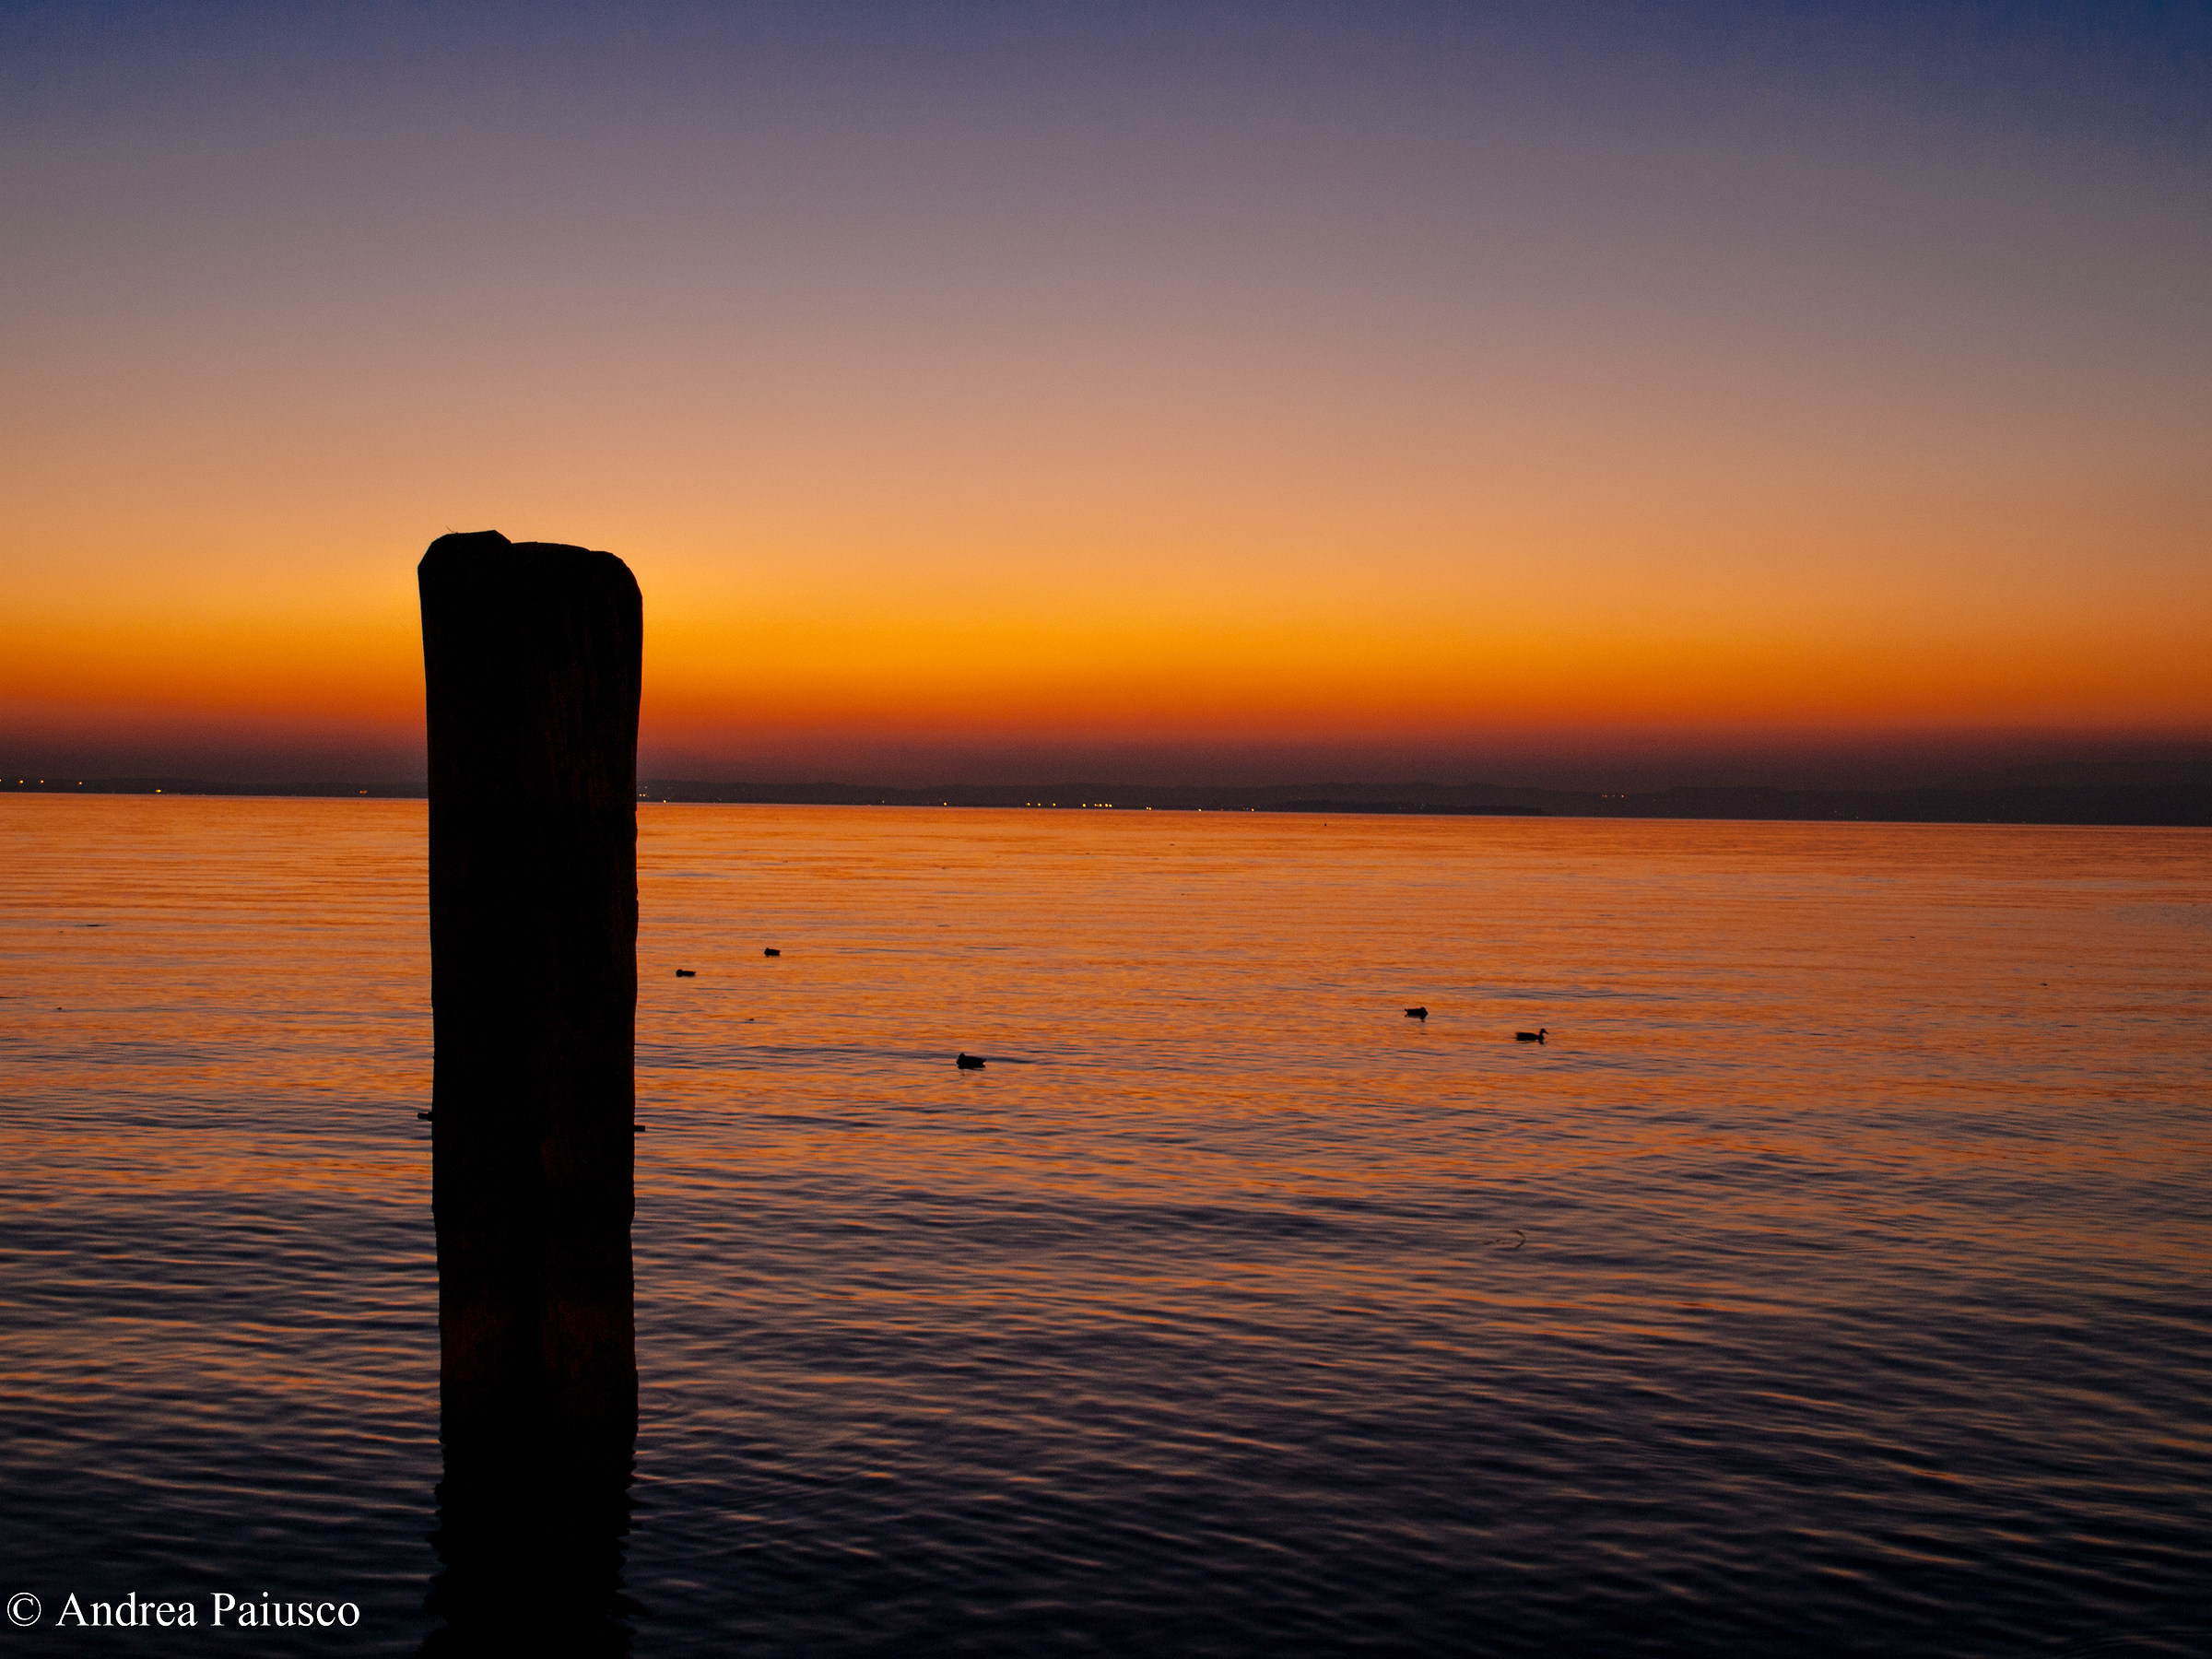 Lake Garda at sunset...